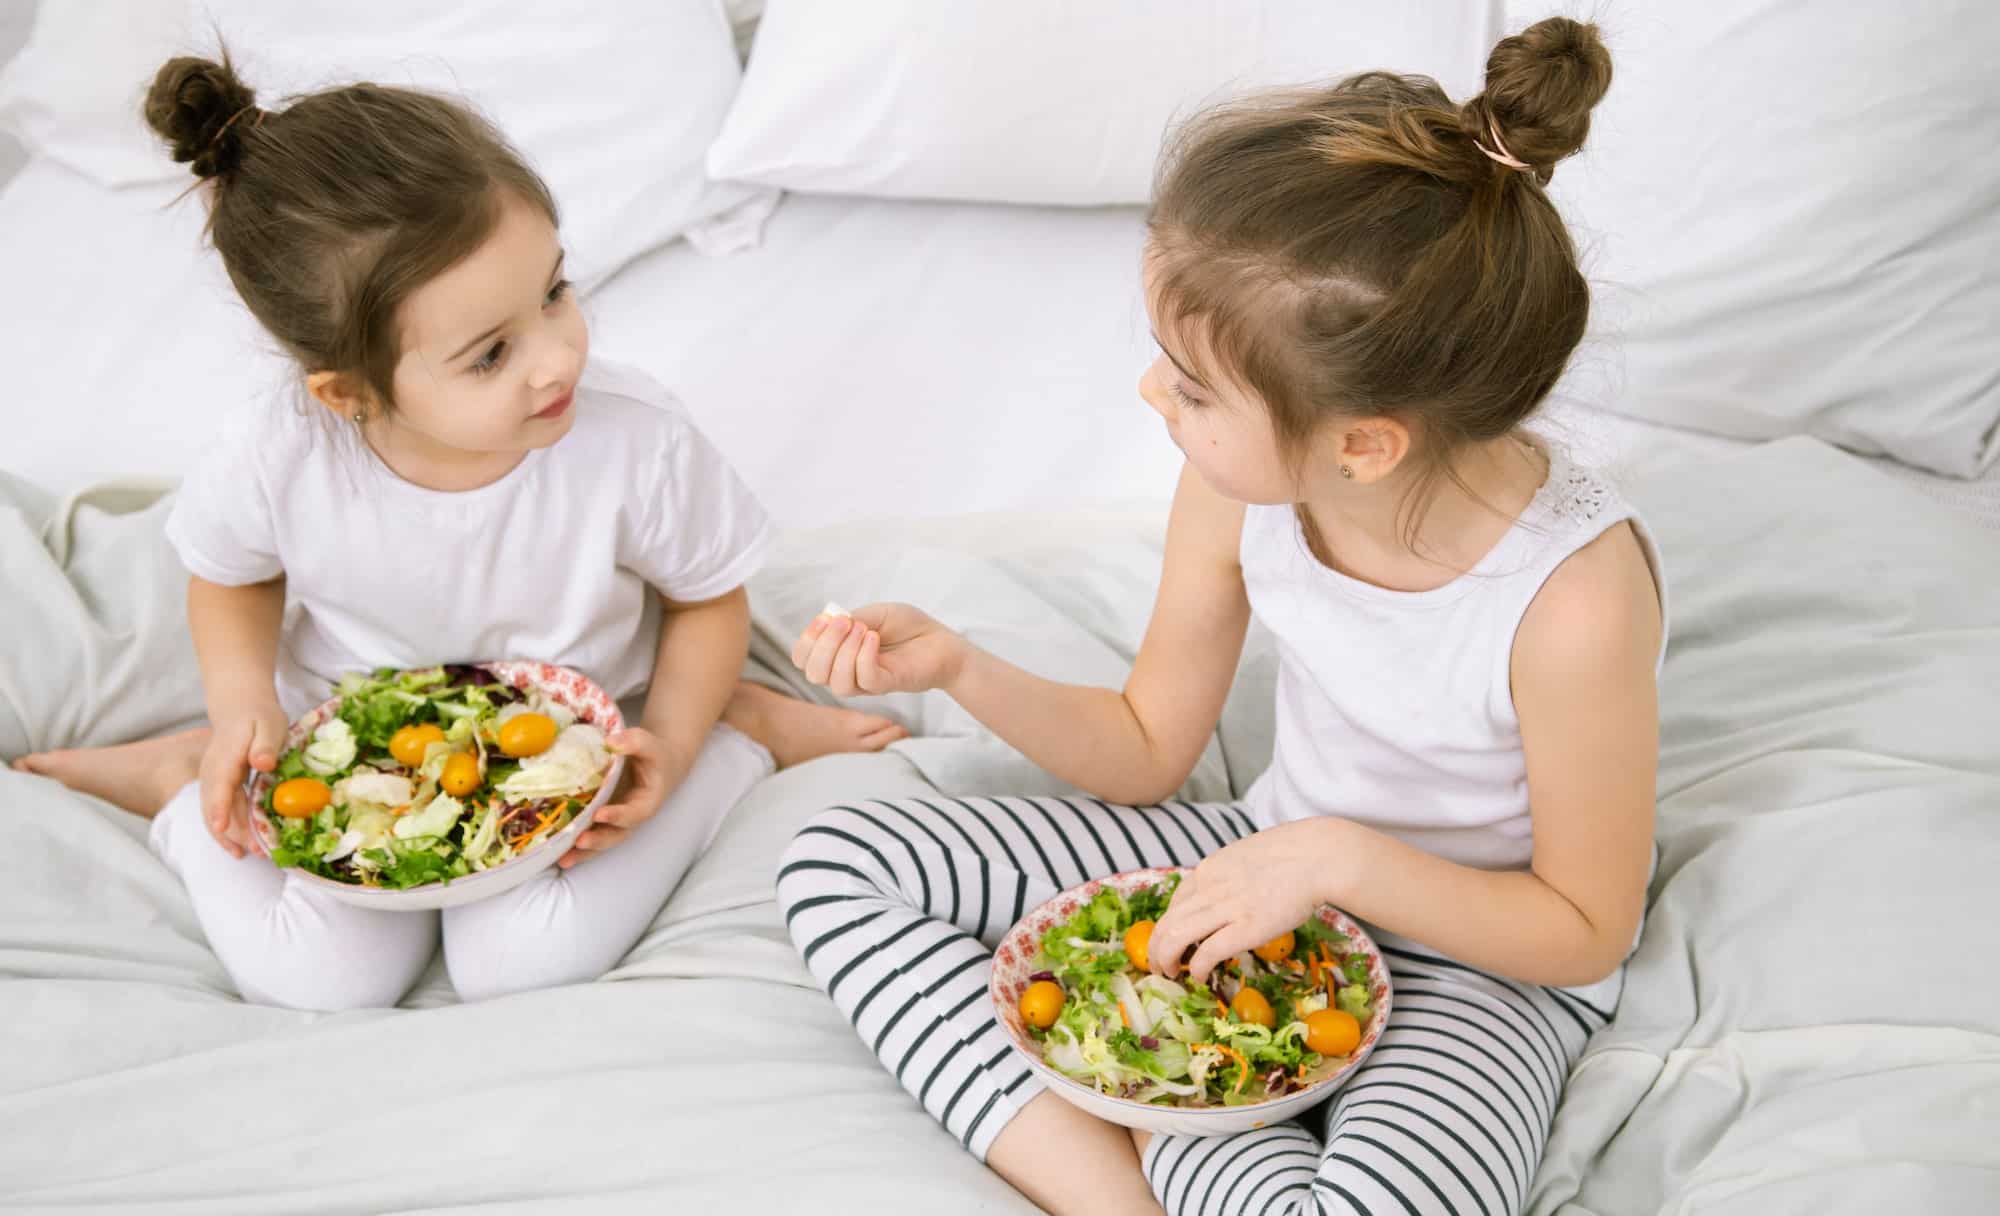 Découvrez le secret pour faire manger plus de légumes aux enfants en seulement 10 minutes !